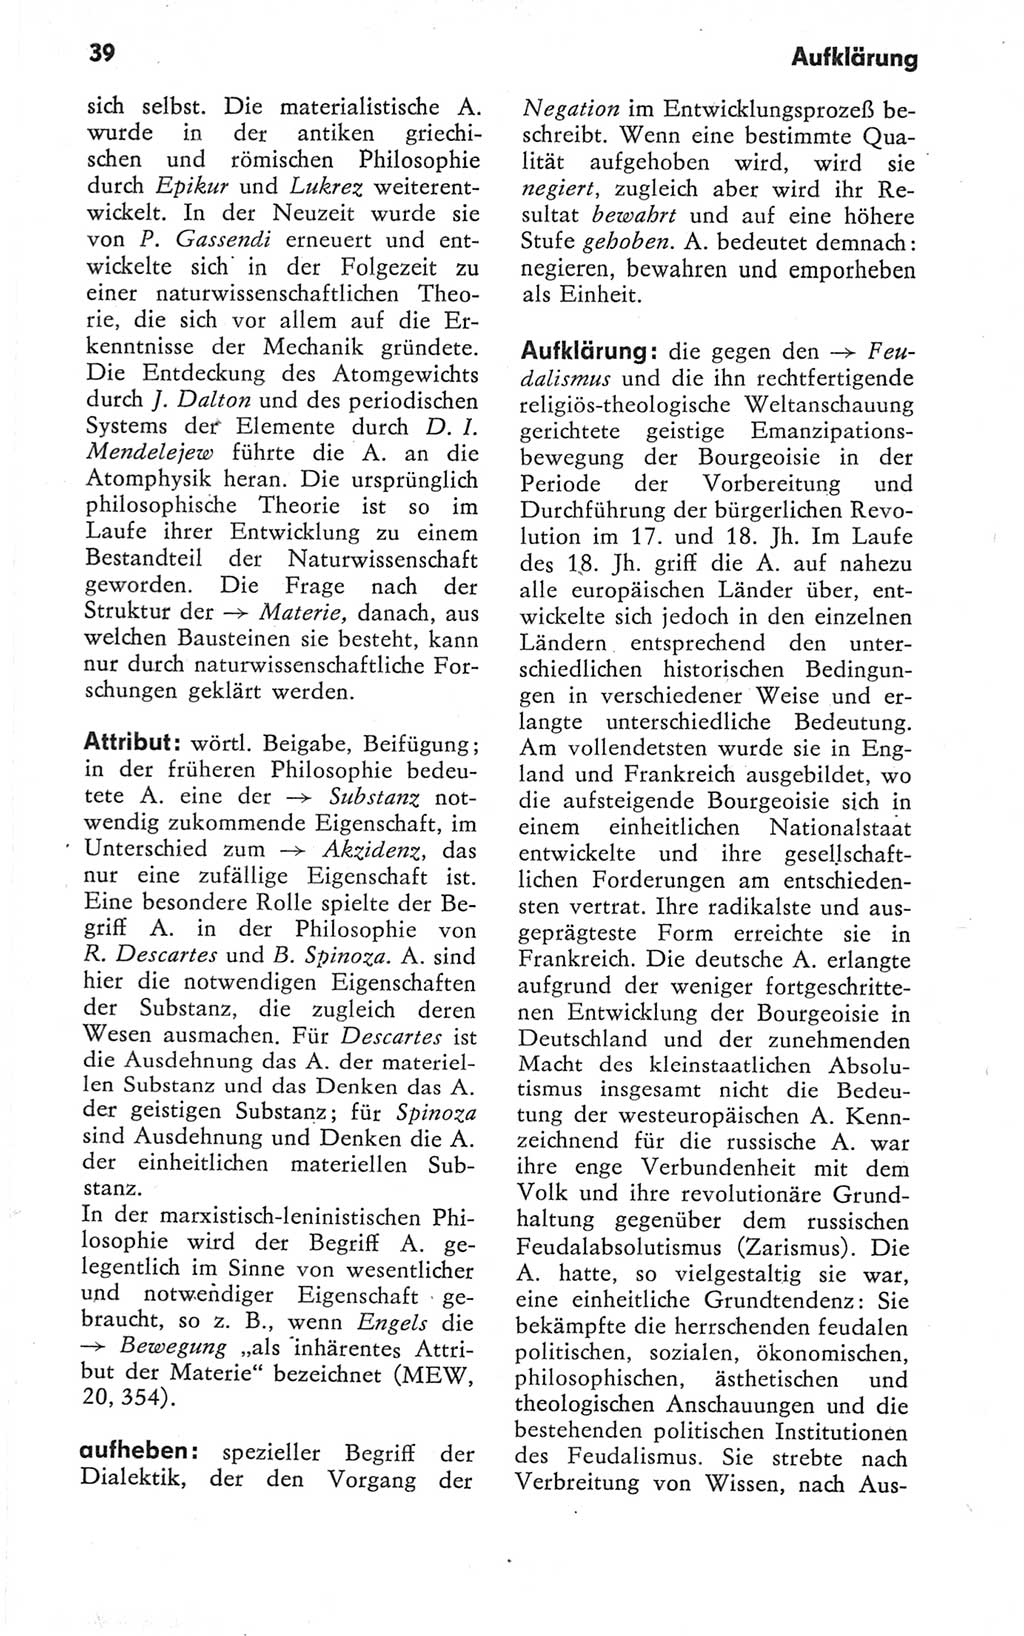 Kleines Wörterbuch der marxistisch-leninistischen Philosophie [Deutsche Demokratische Republik (DDR)] 1979, Seite 39 (Kl. Wb. ML Phil. DDR 1979, S. 39)